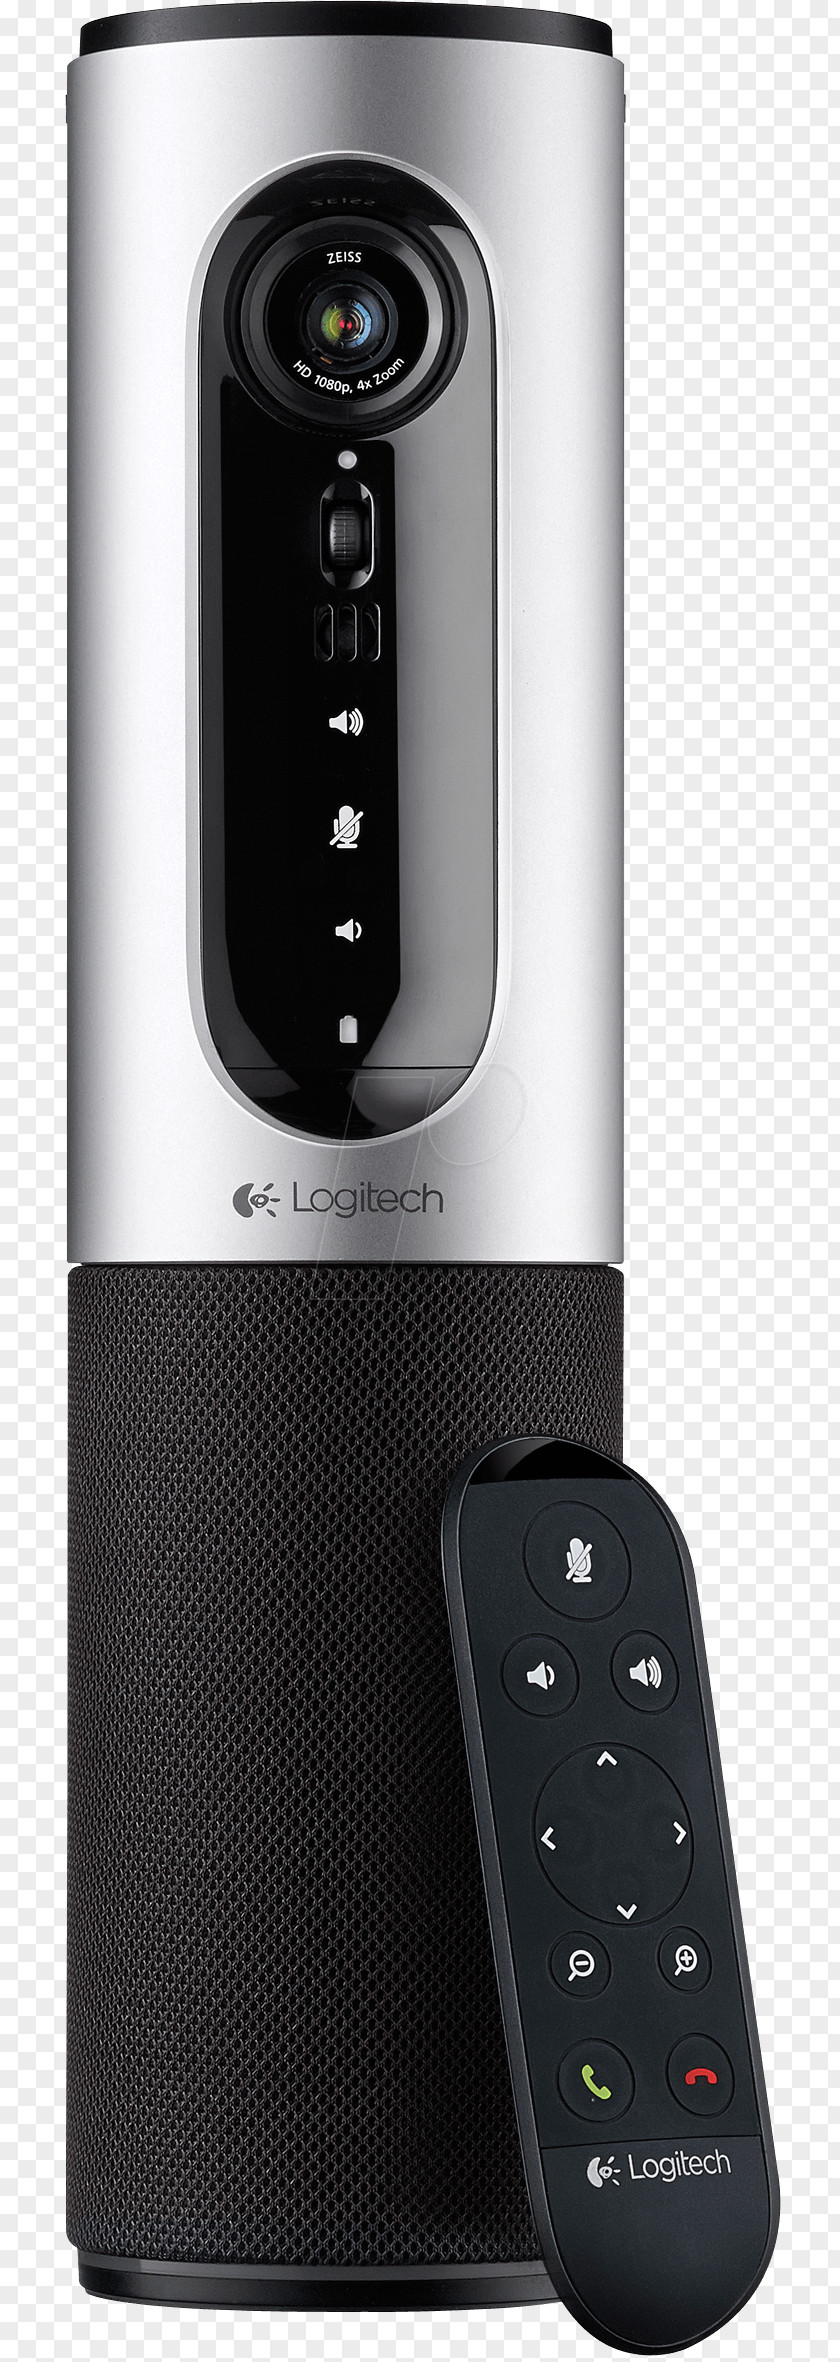 Web Camera Logitech Webcam Videotelephony 1080p PNG